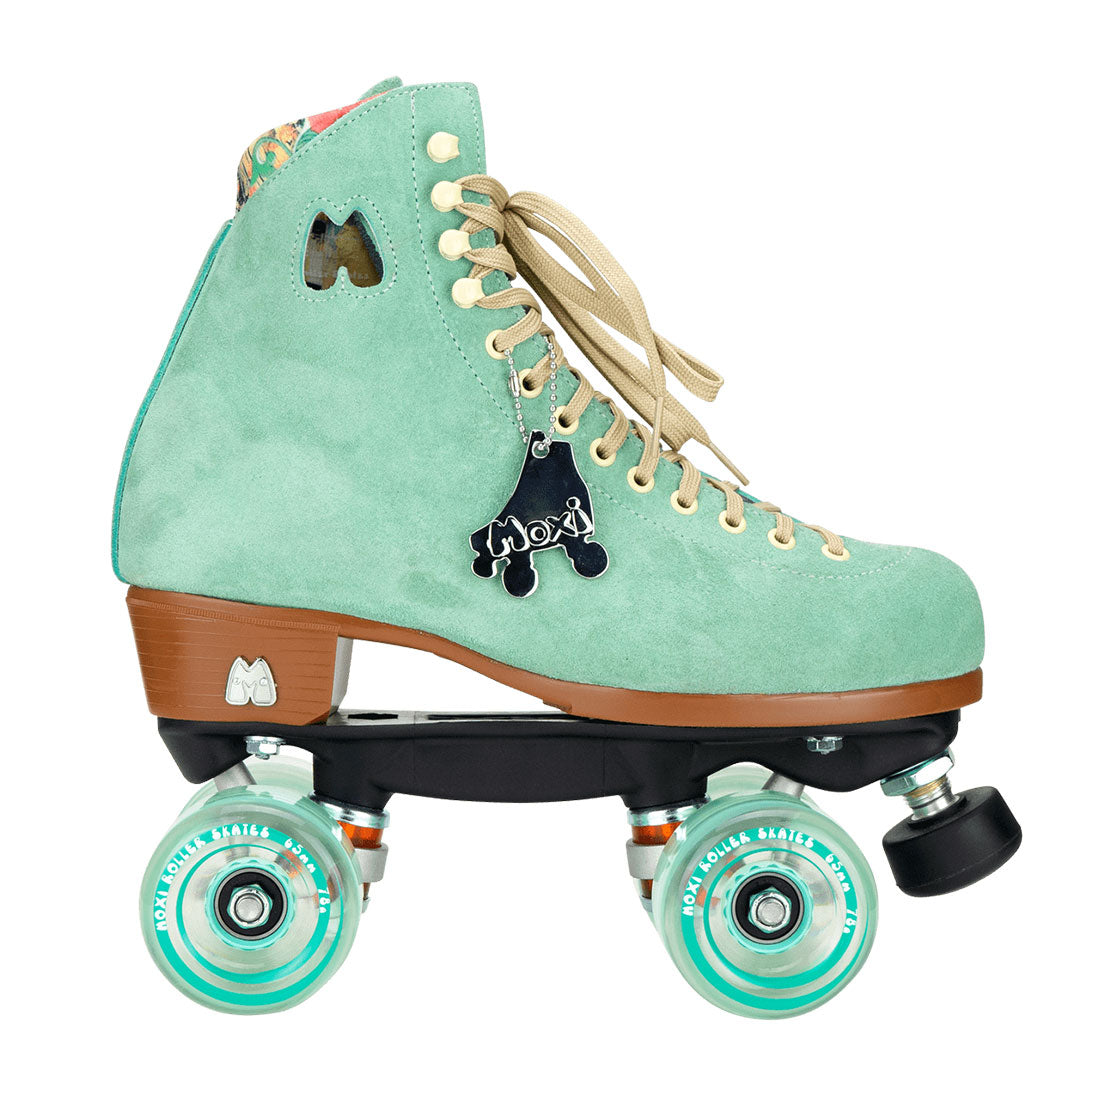 Moxi Lolly Skate - Floss Teal Roller Skates